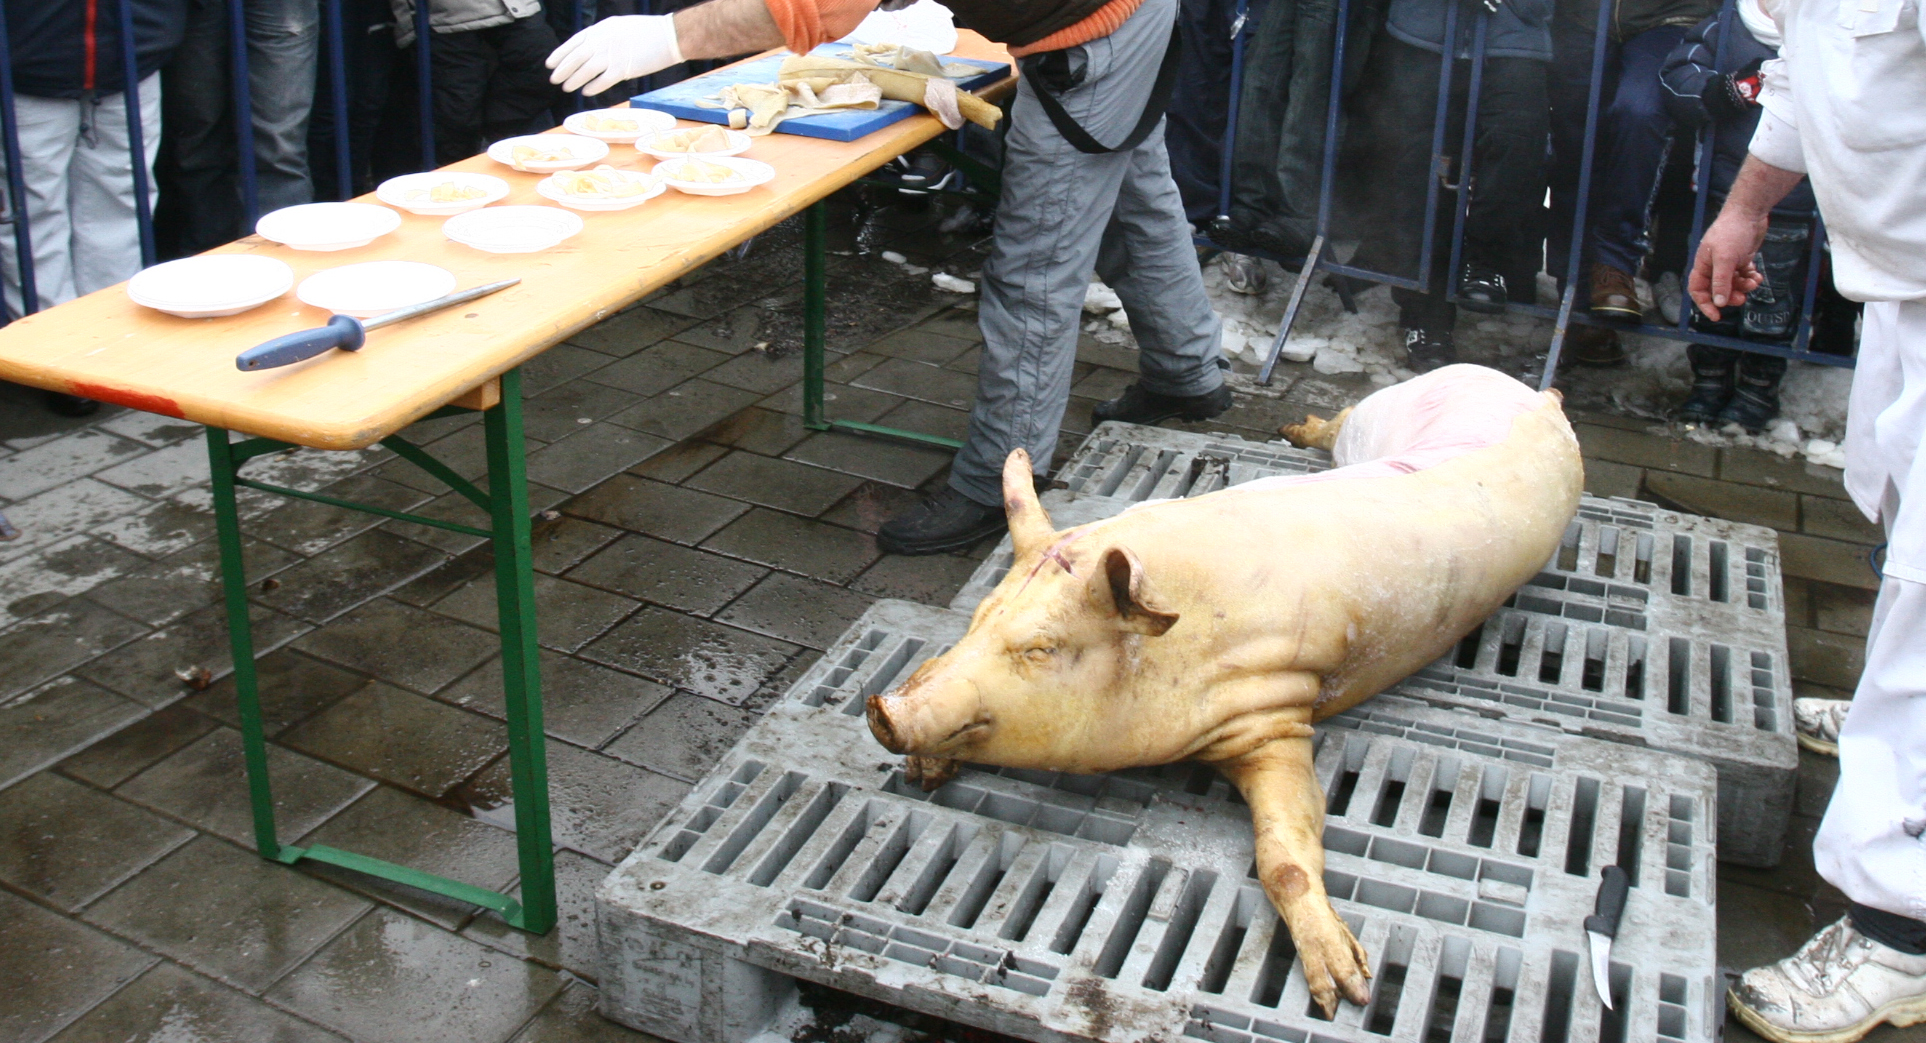 Cu doar cateva zile inainte de Craciun, Mihaela Borcea cumpara un porc, iar cineva i-l taie in propria curte